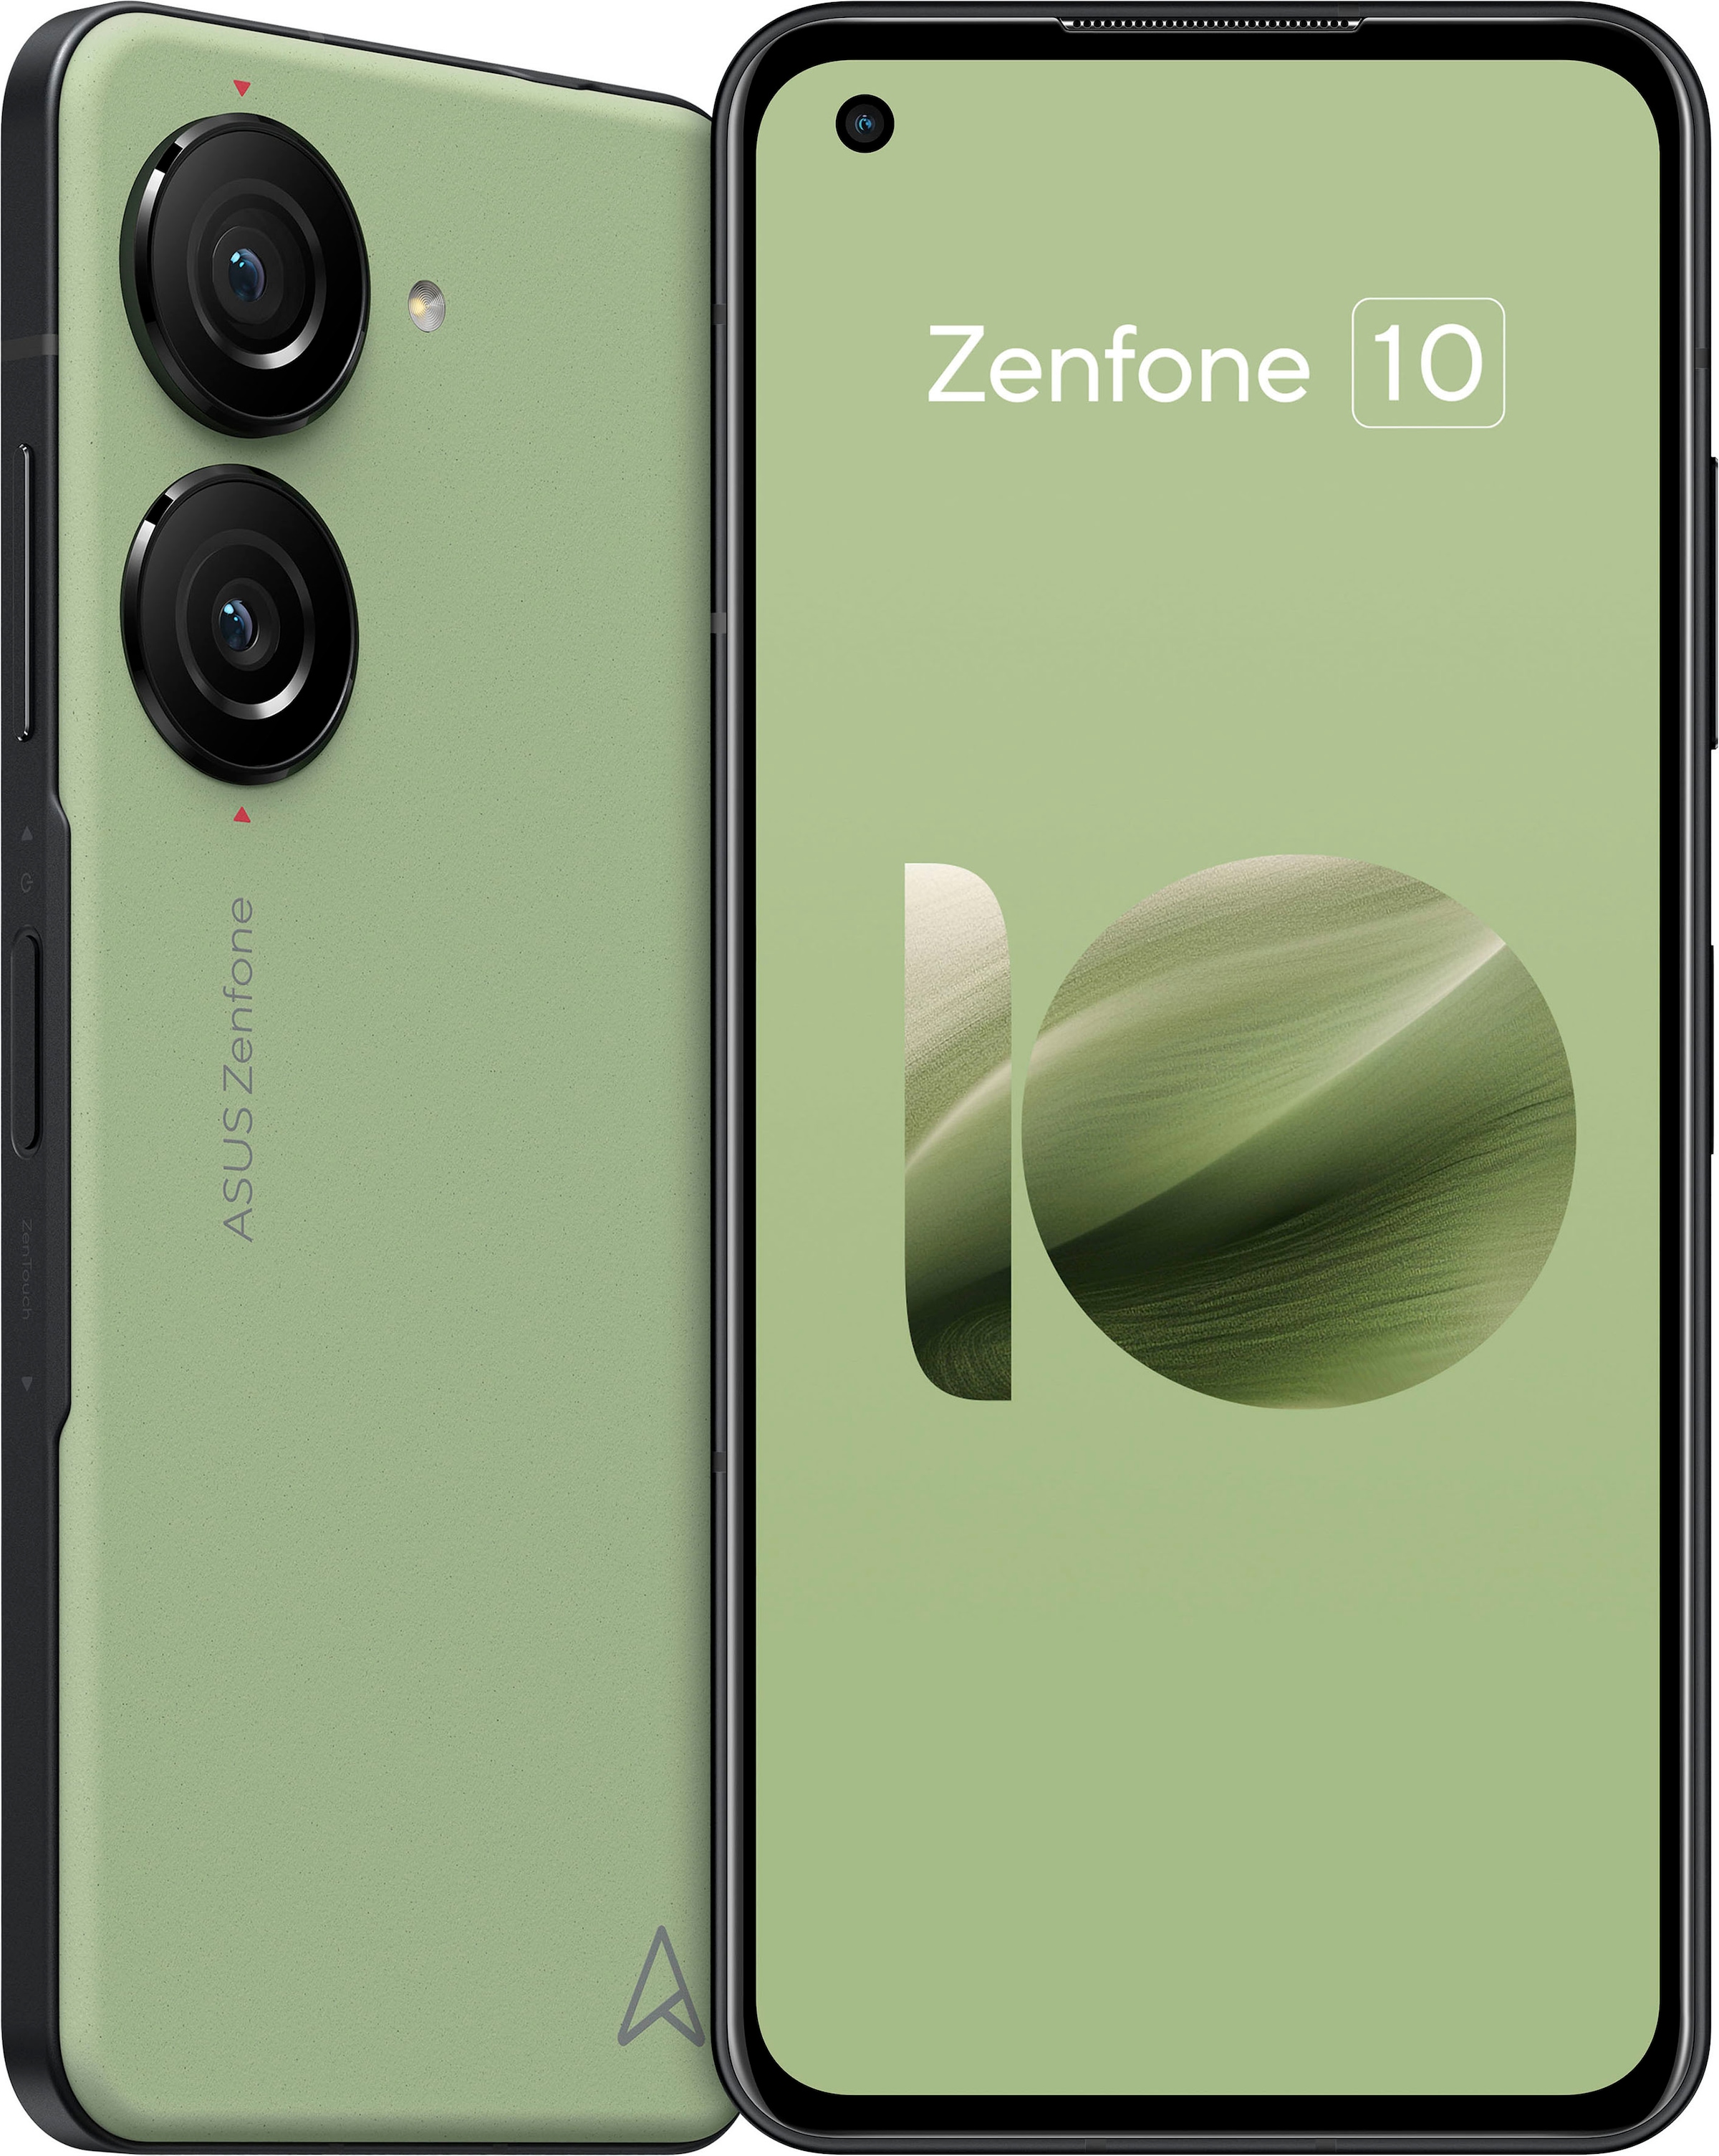 Asus Smartphone »ZENFONE 10«, schwarz, 14,98 cm/5,9 Zoll, 512 GB  Speicherplatz, 50 MP Kamera jetzt bei OTTO